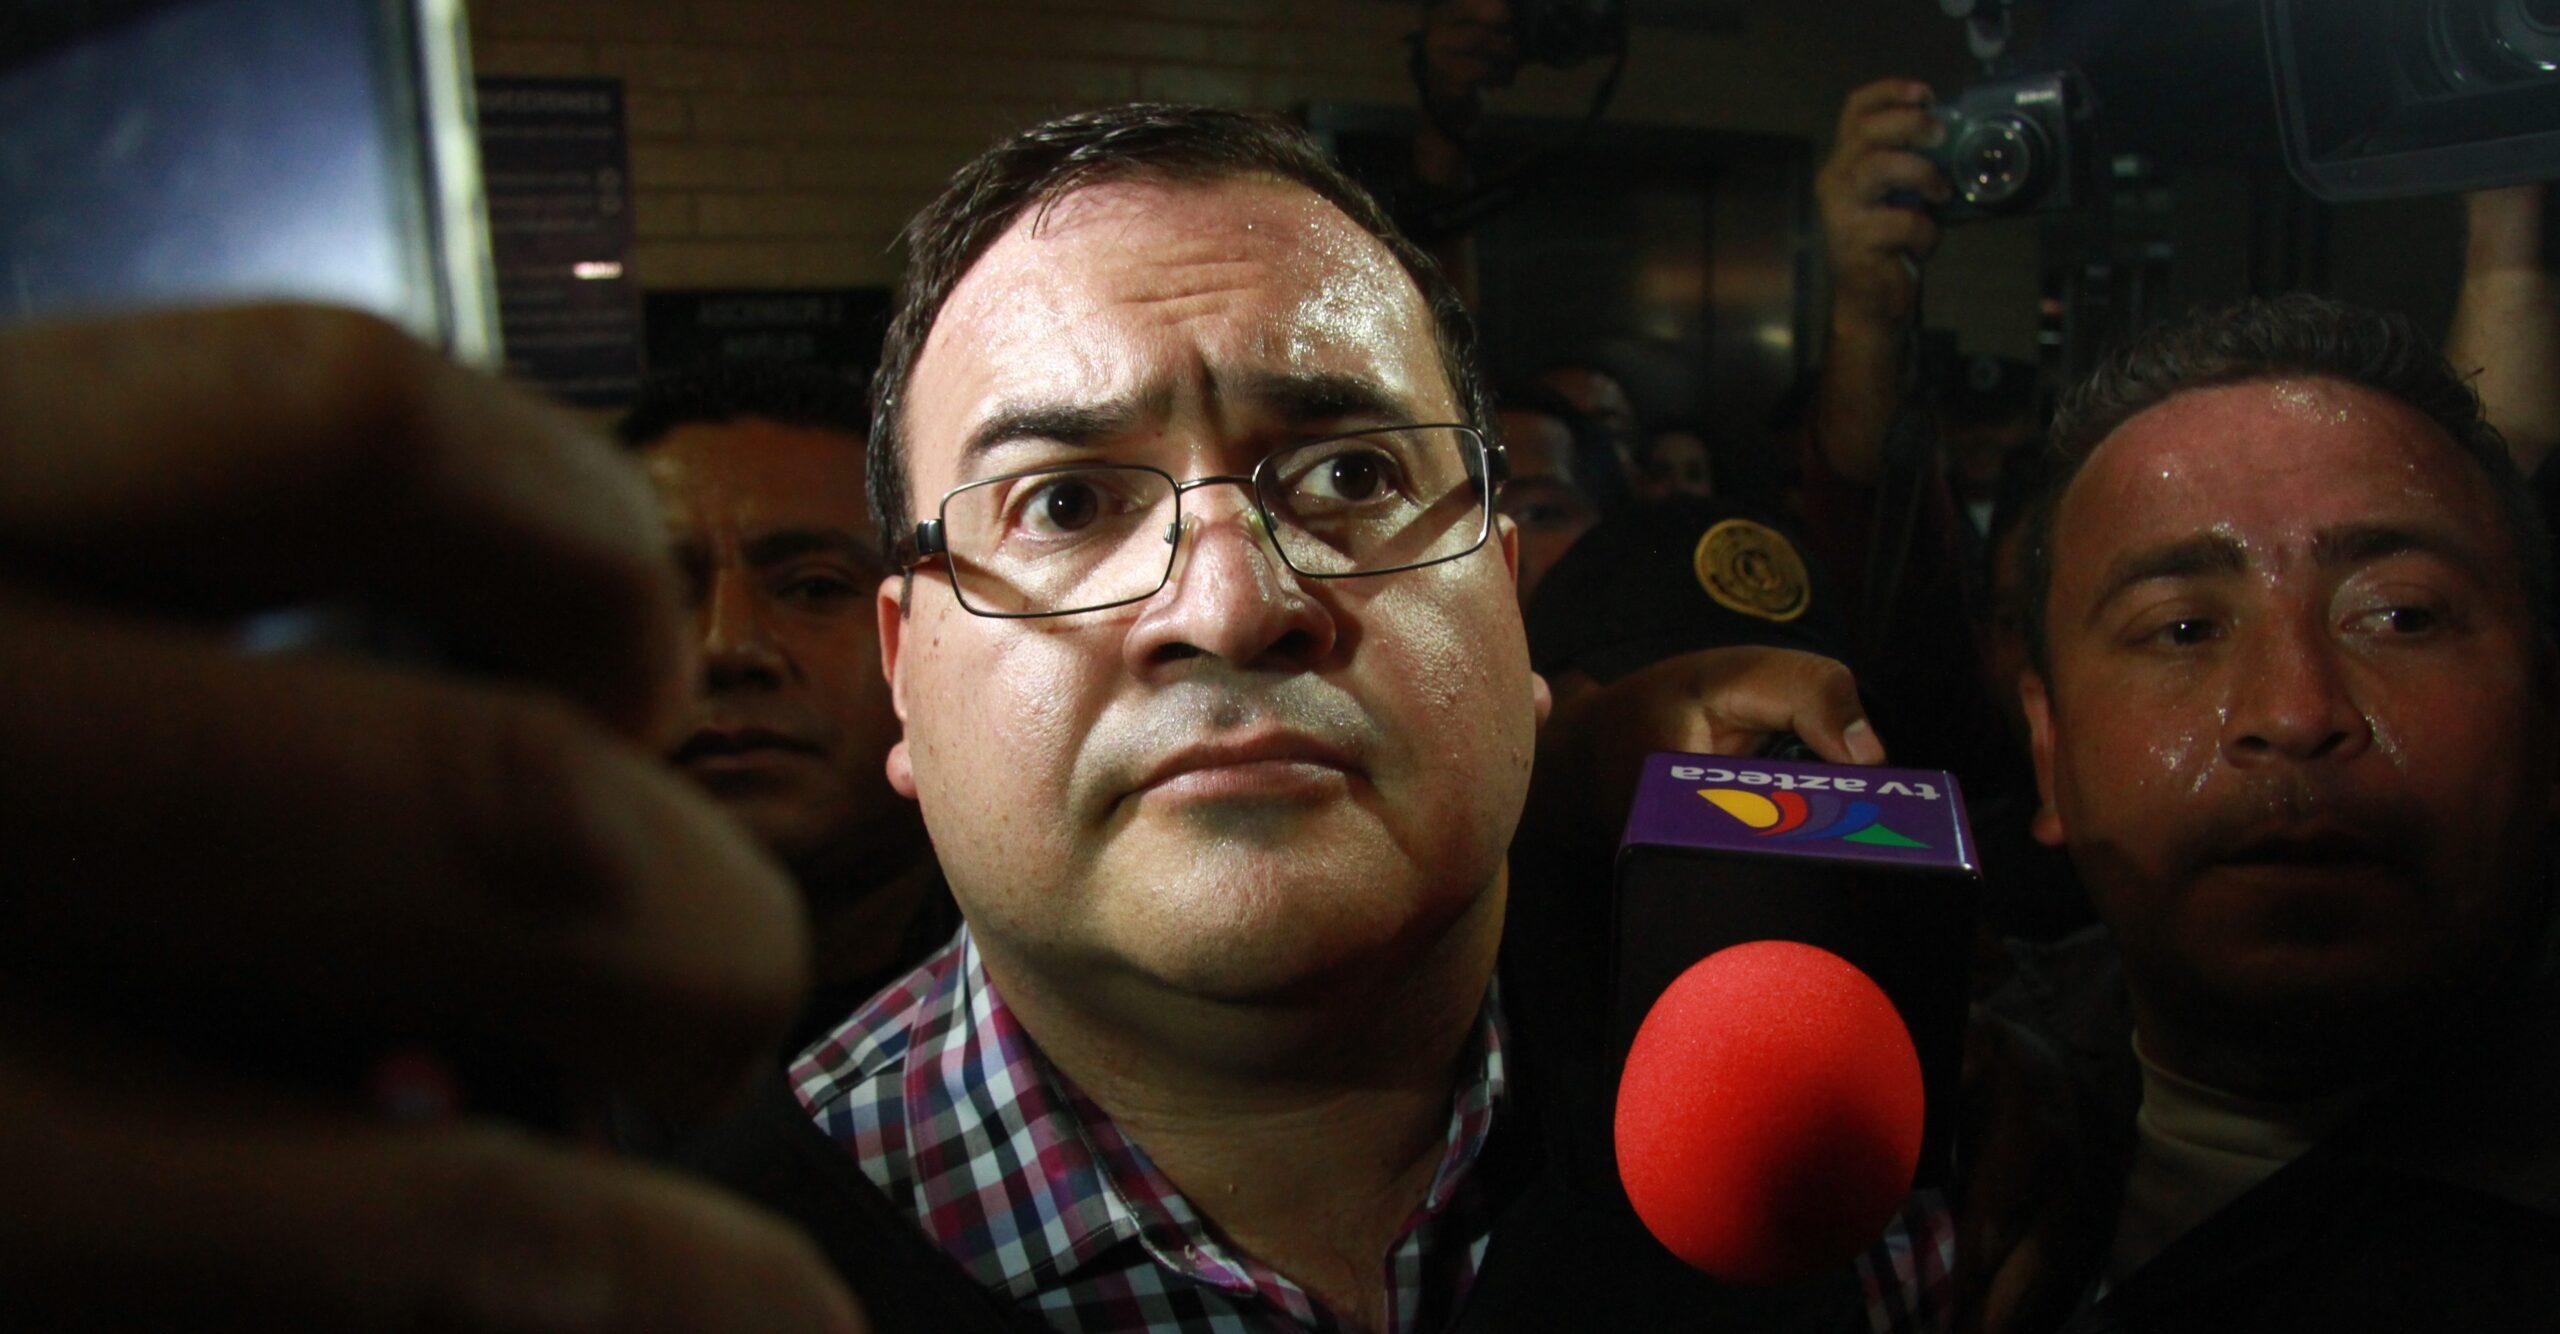 Juez cancela audiencia contra Duarte por desaparición forzada; proceso se detiene otra vez